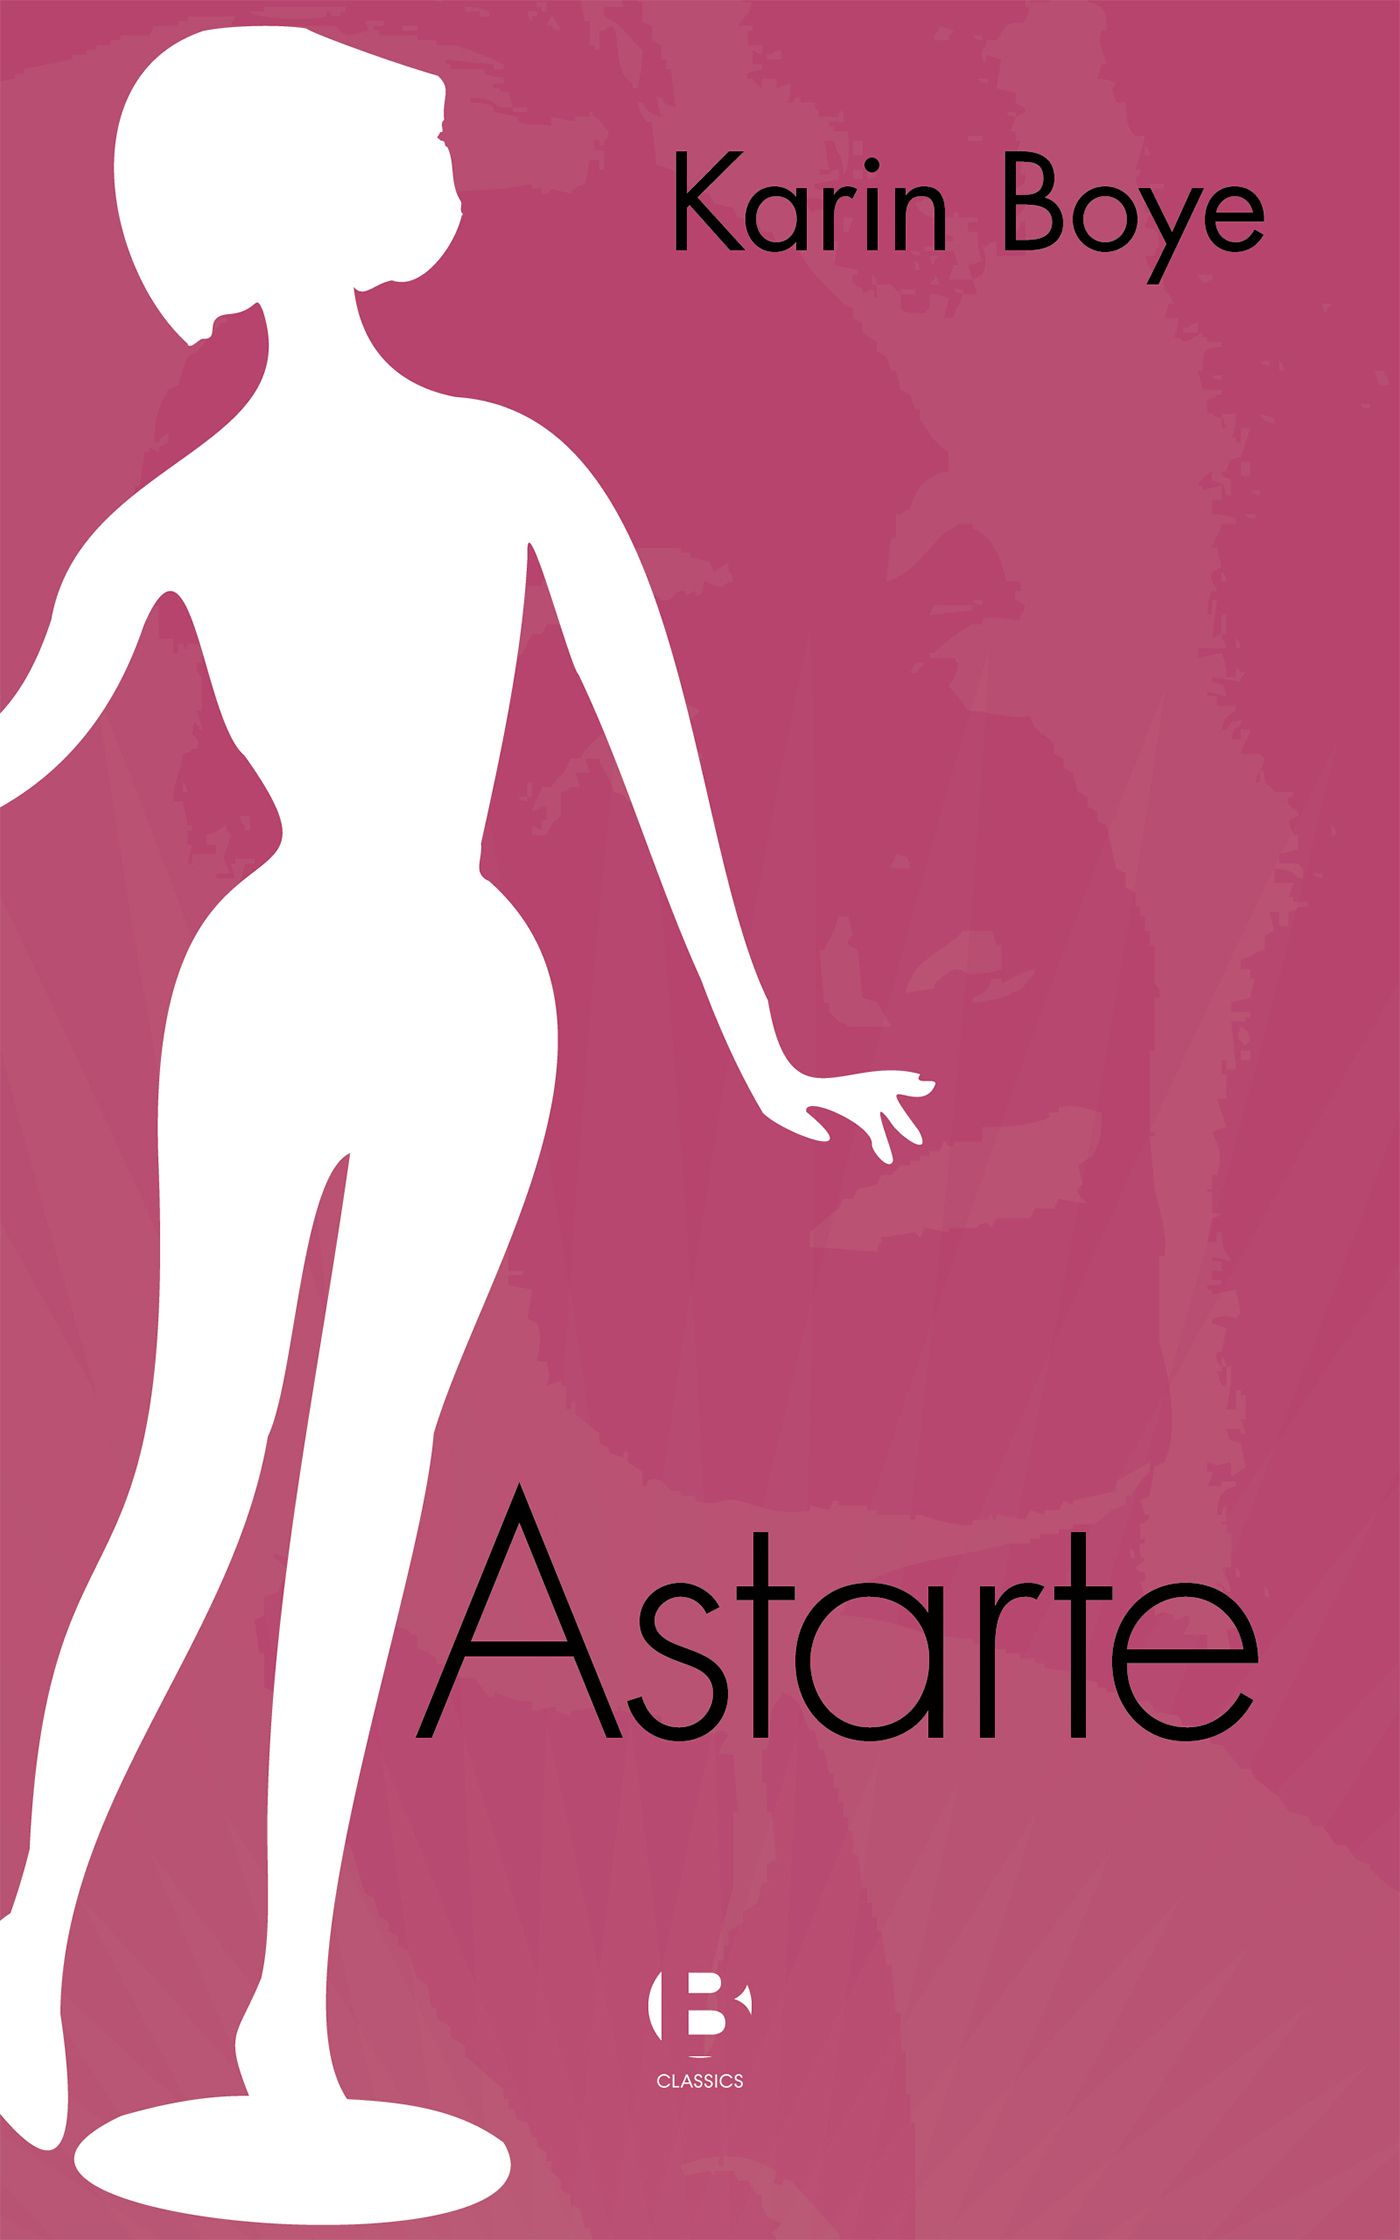 Astarte, eBook by Karin Boye